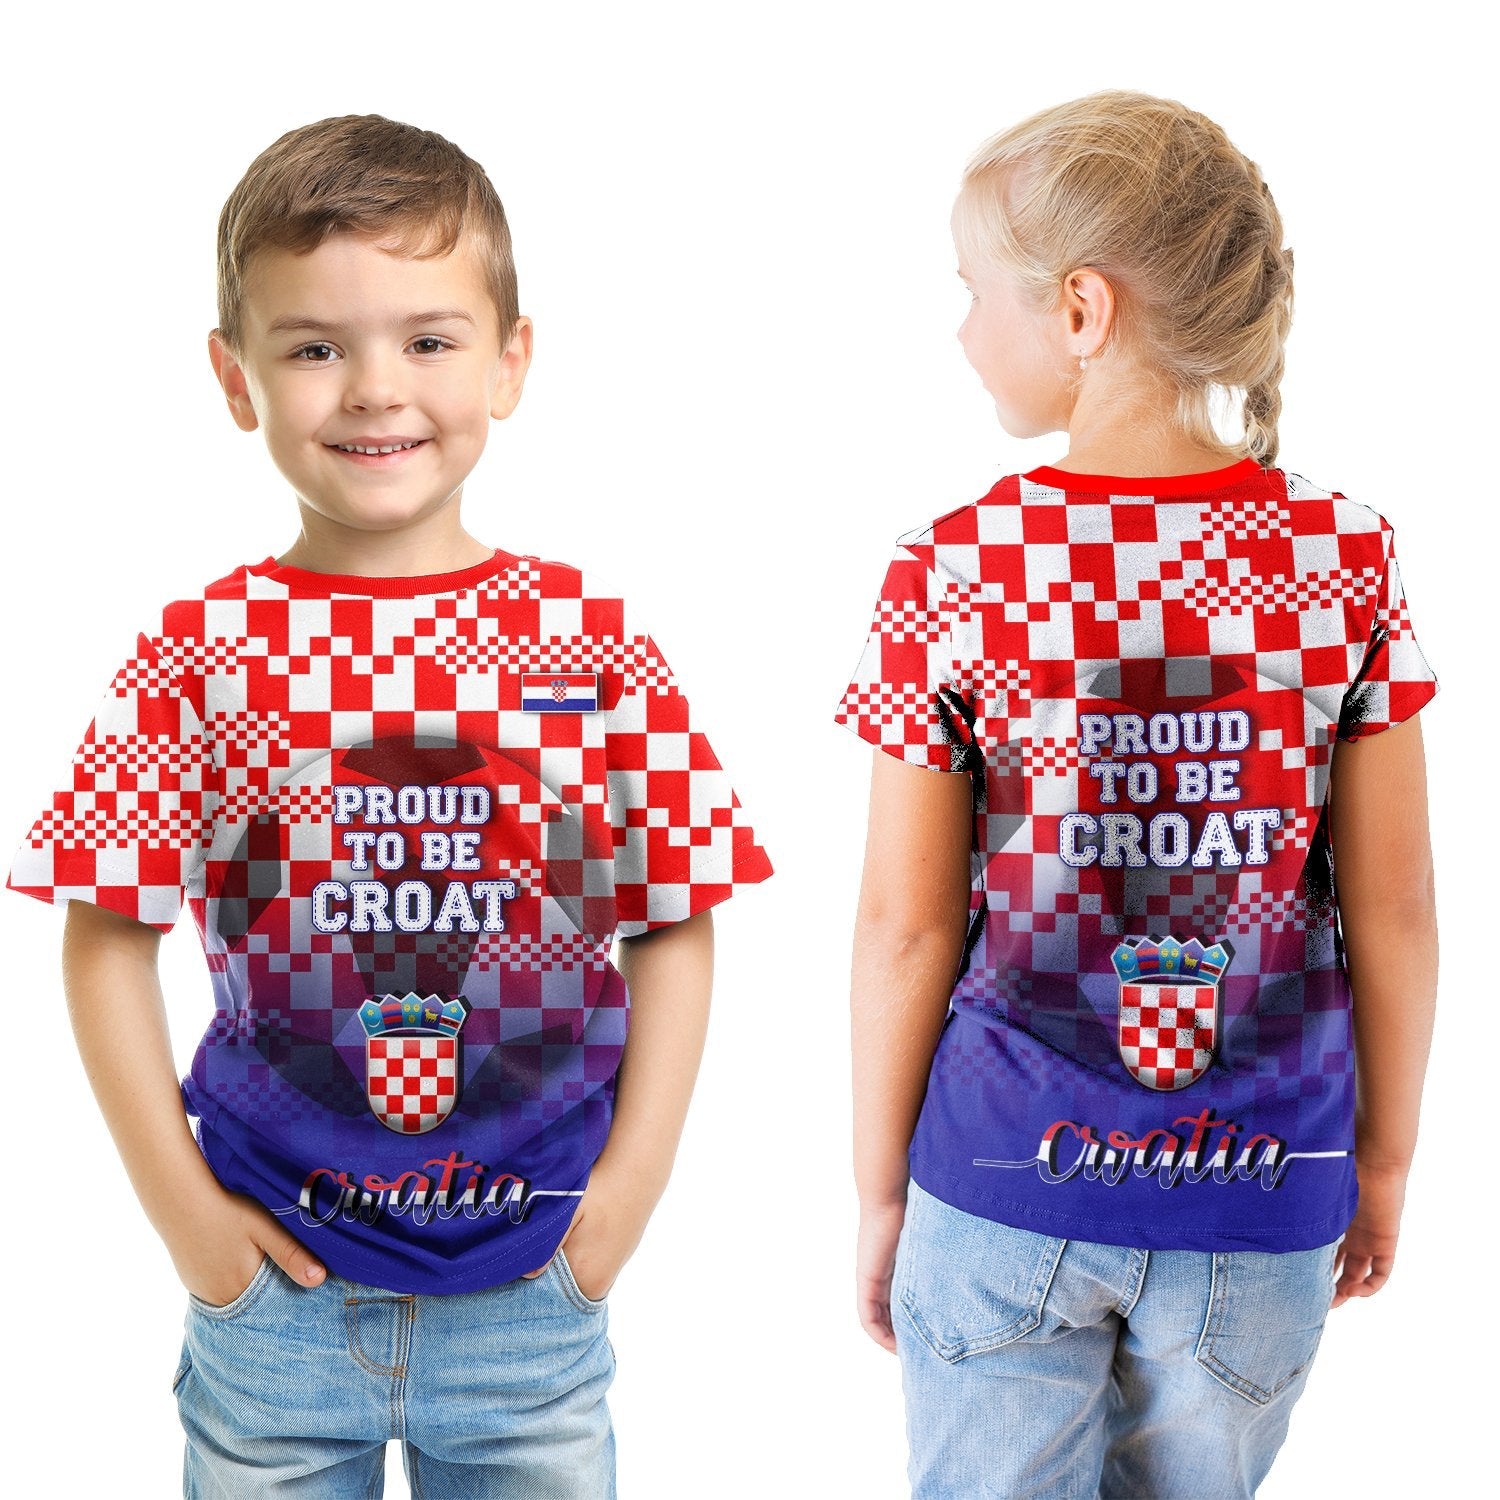 croatia-t-shirt-kid-proud-to-be-croat